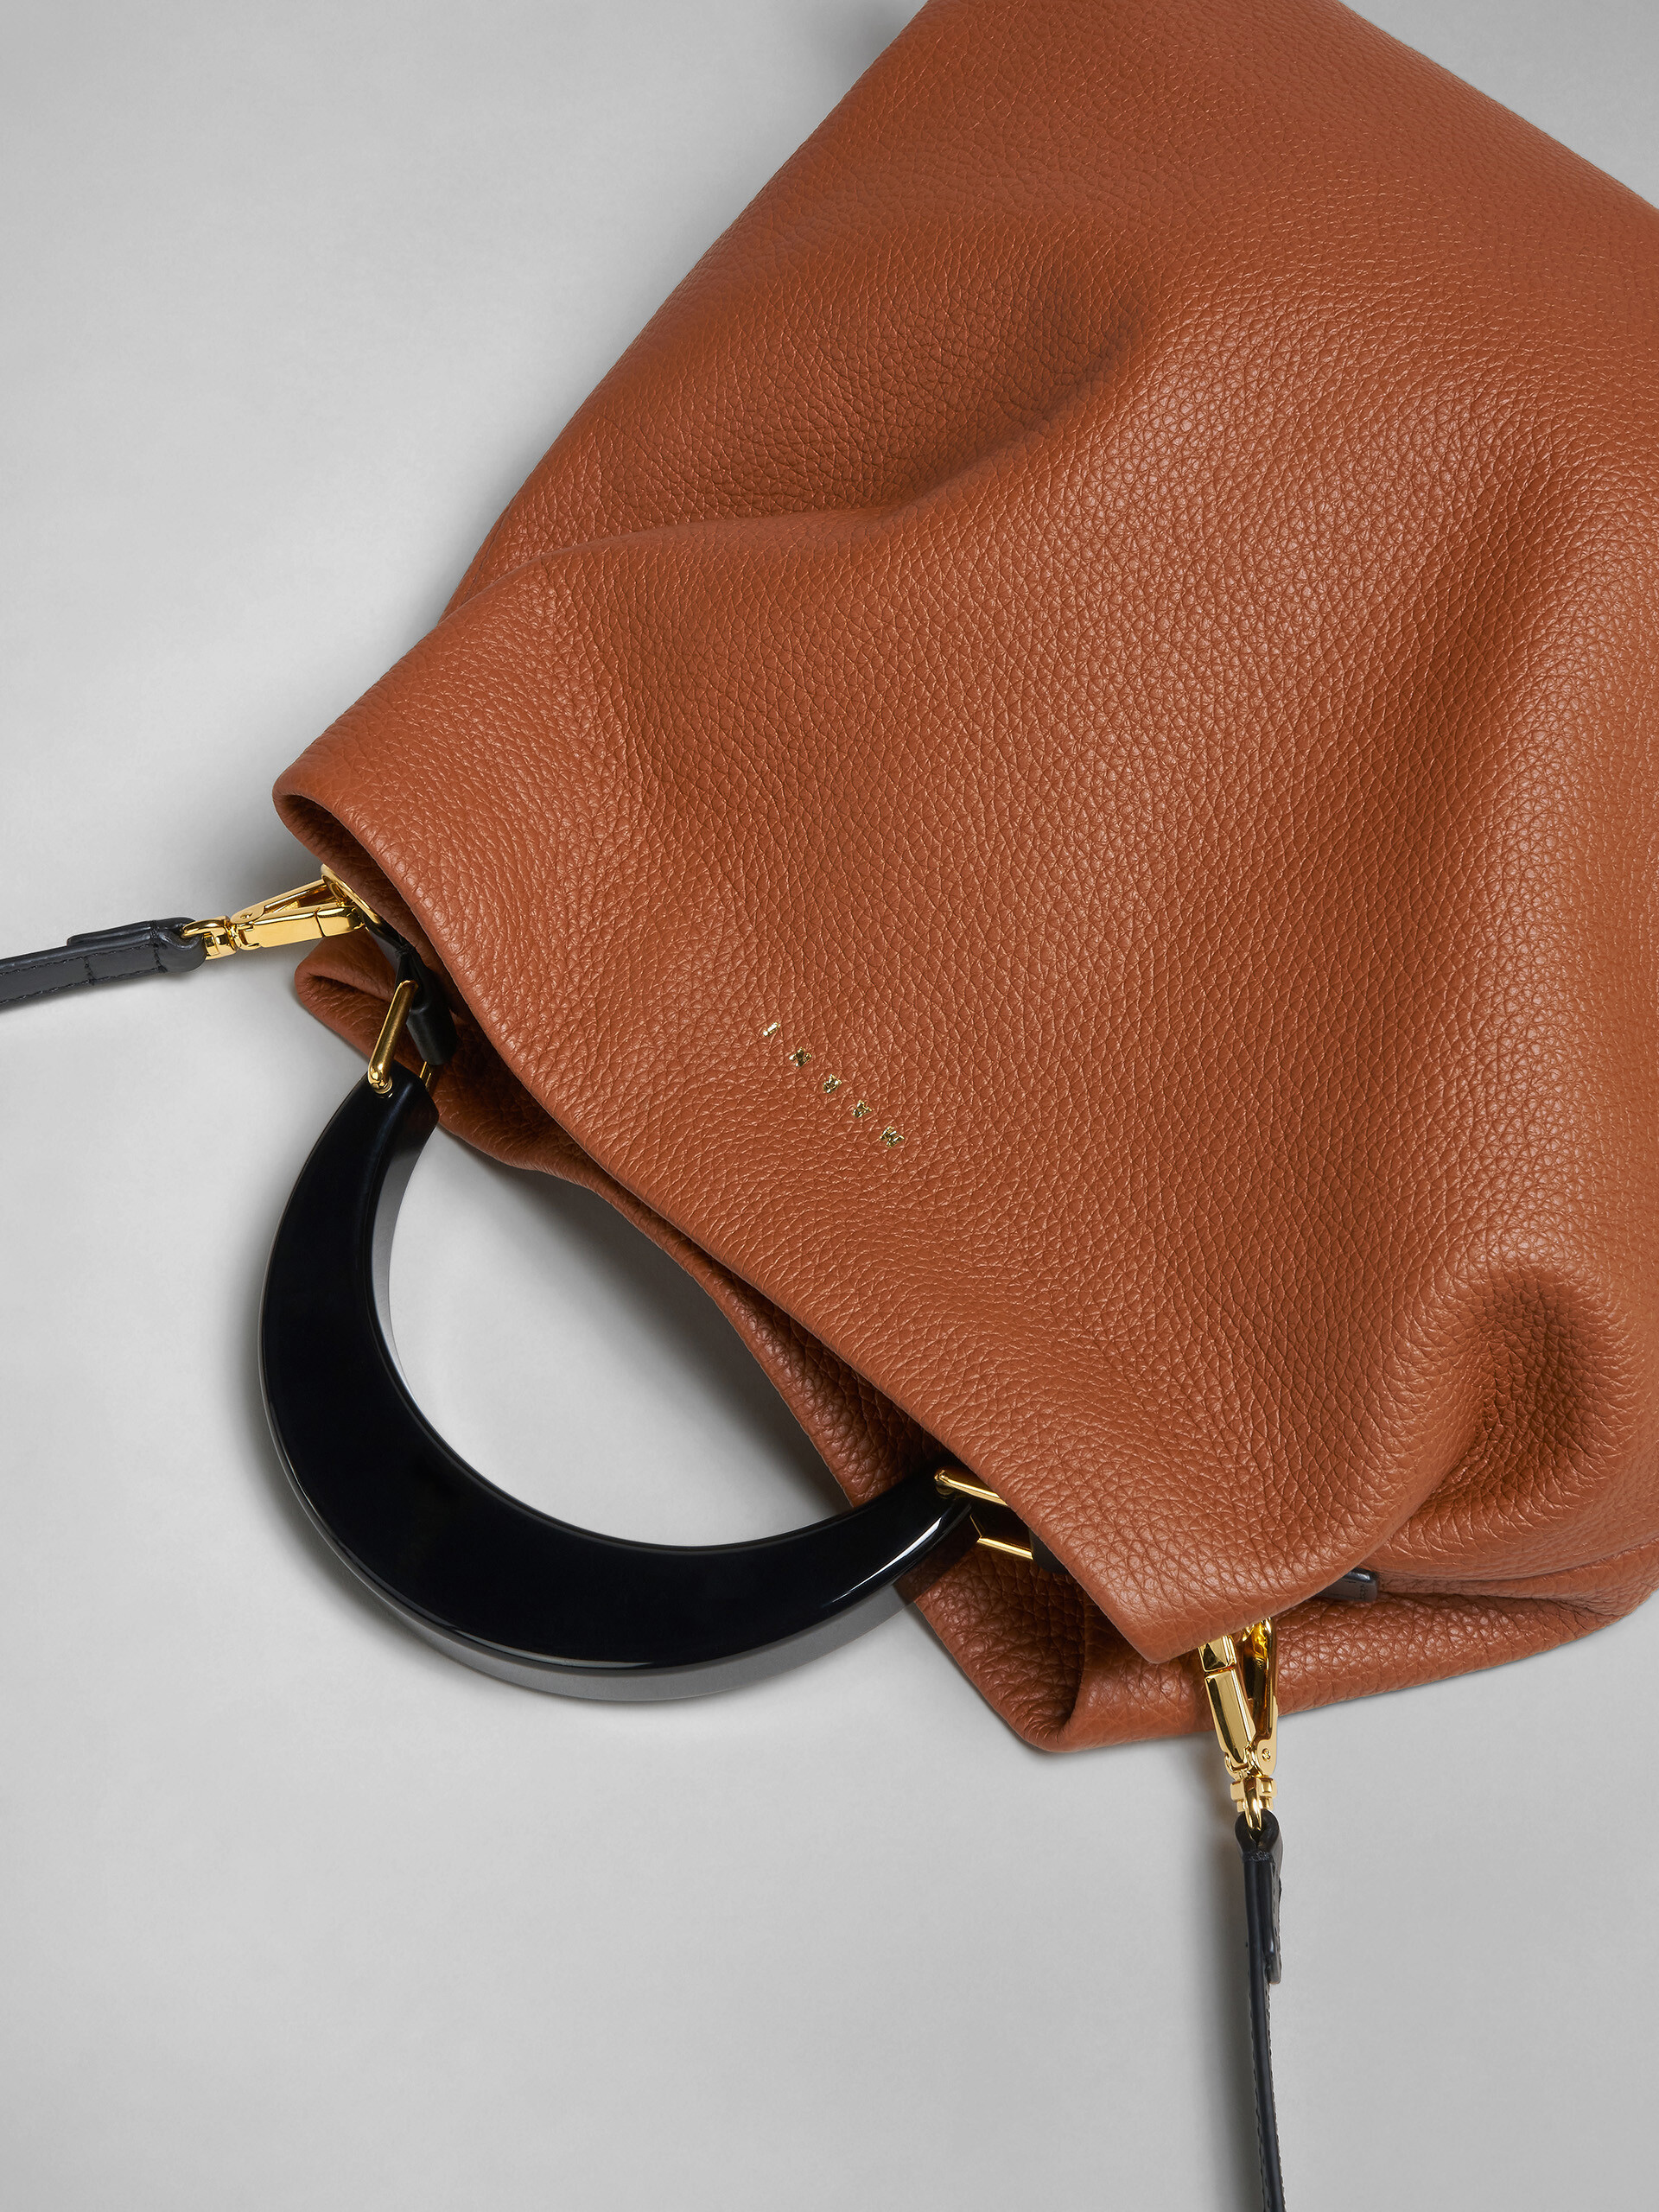 Venice medium bag in brown leather - Shoulder Bag - Image 5